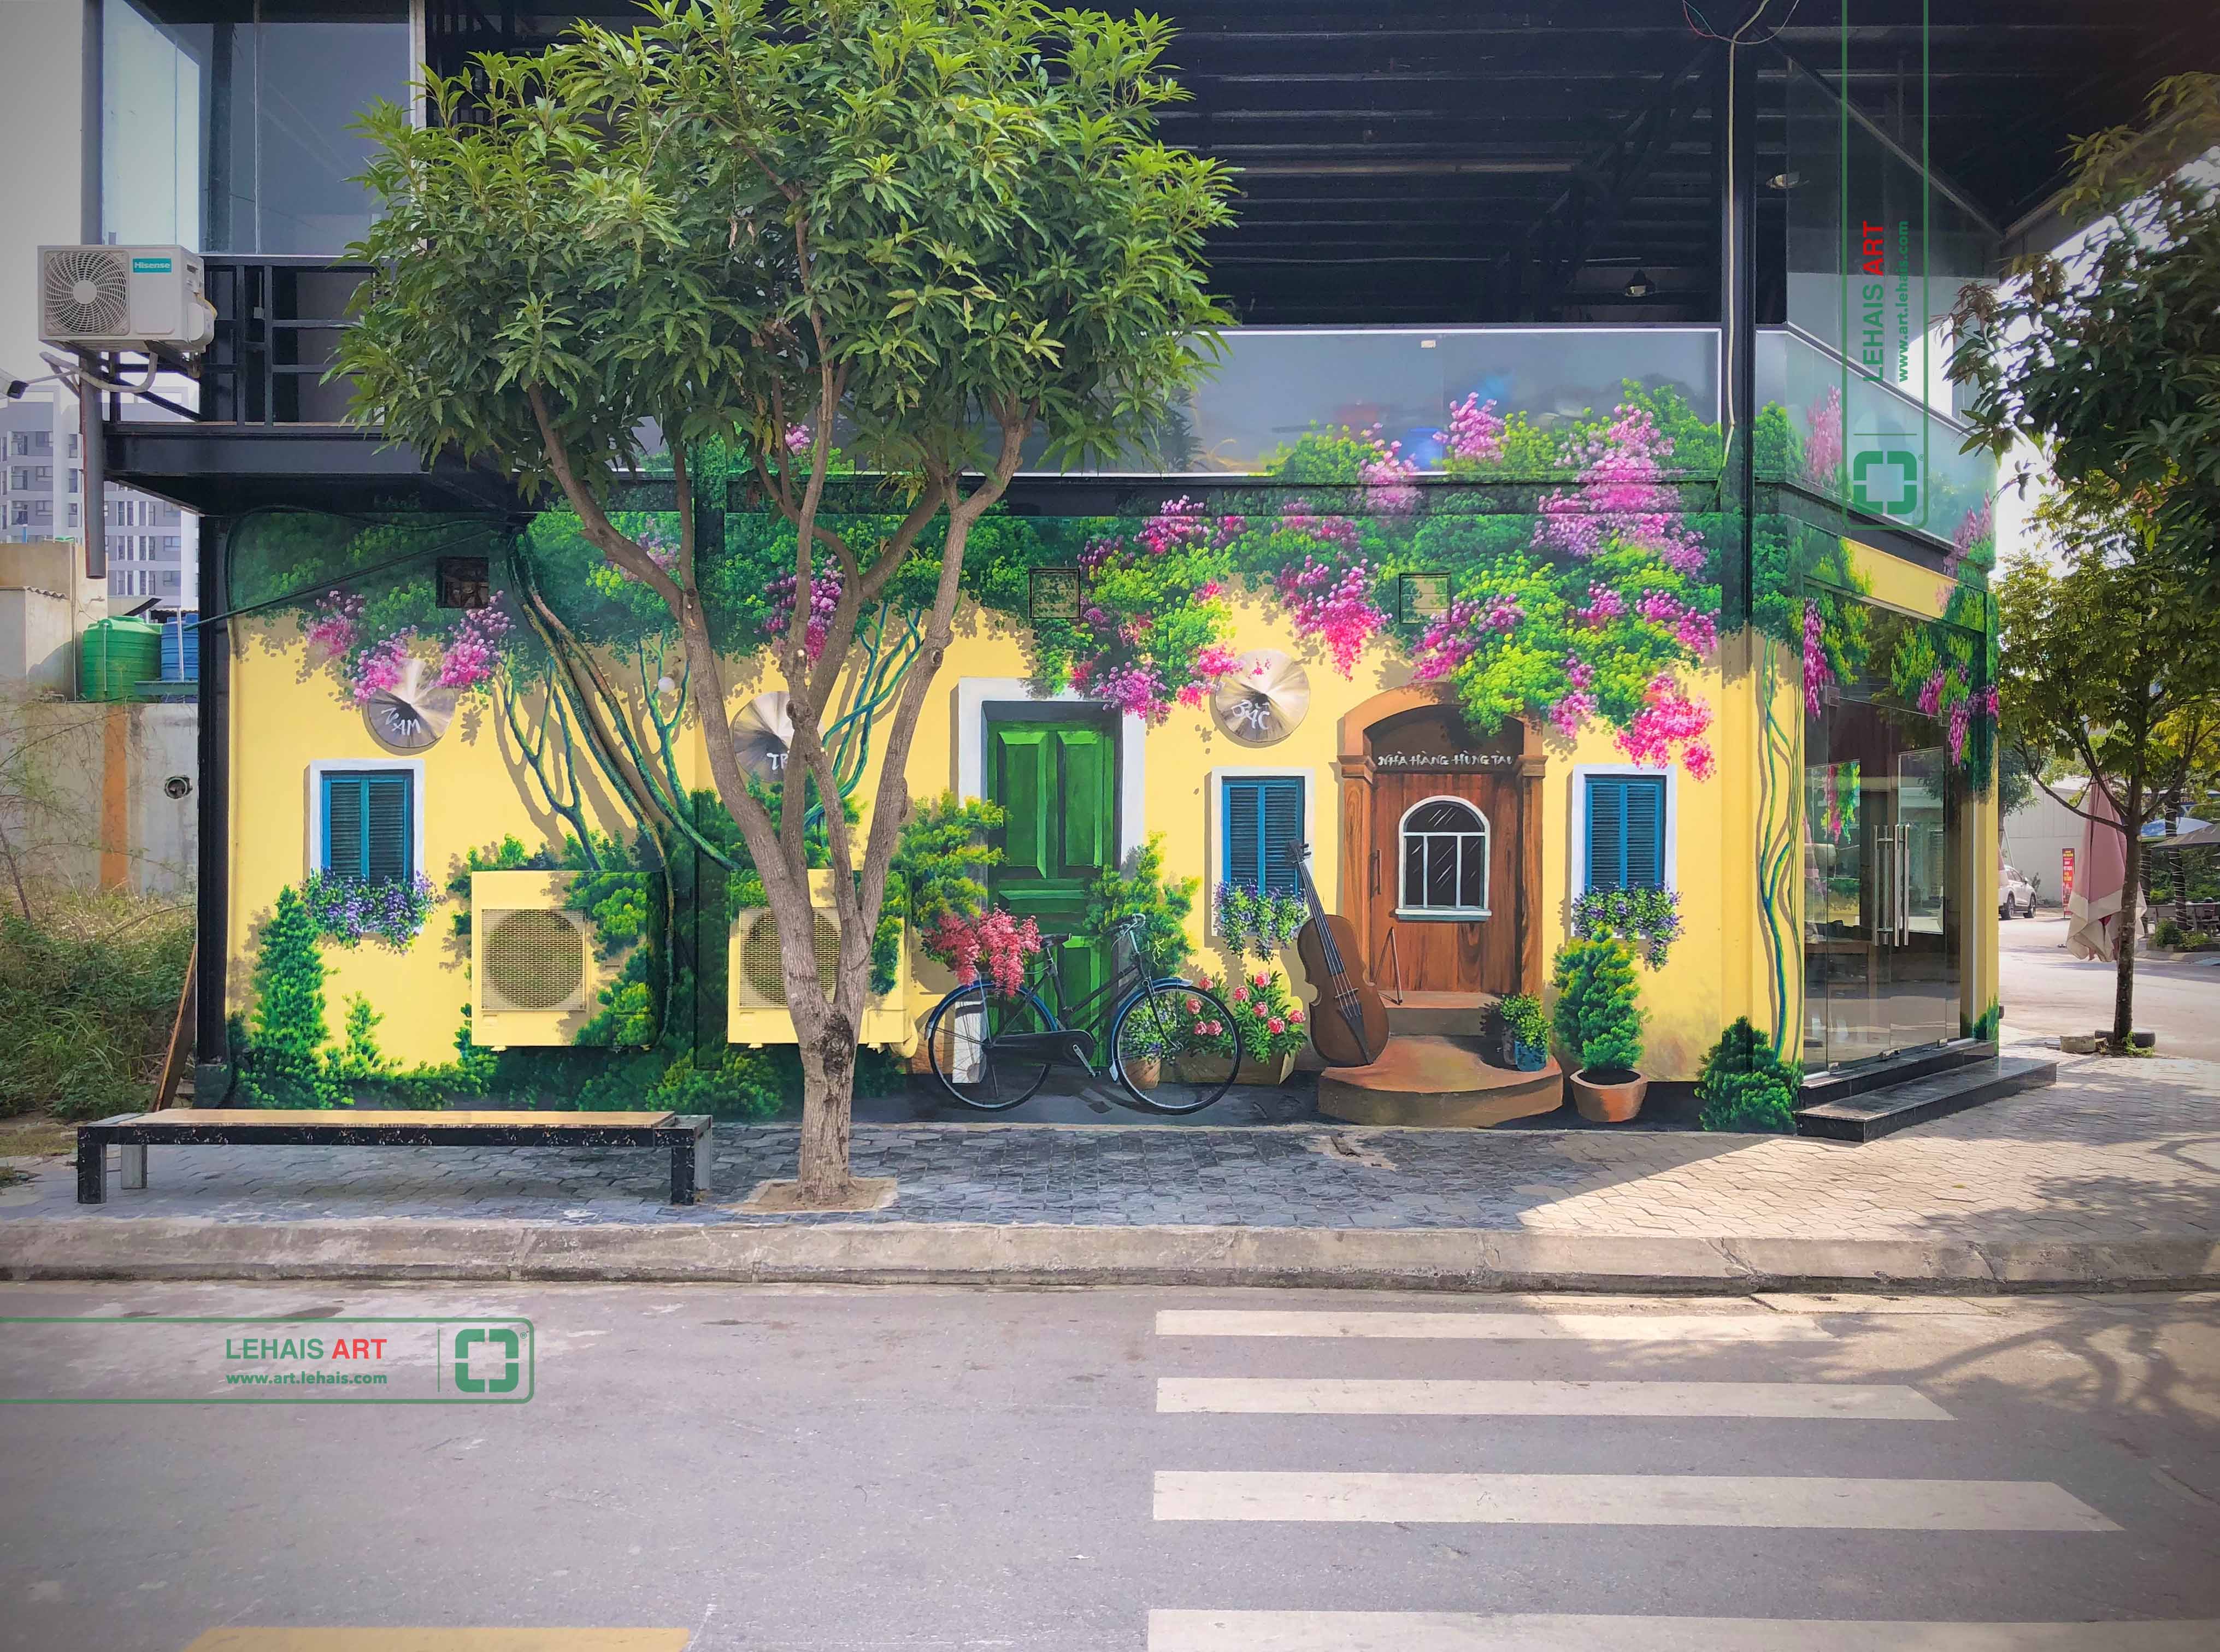 Vẽ tranh 3D trang trí tường tại nhà Hàng Hùng Tàu ở Phố Nối, Hưng Yên - TT198LHAR